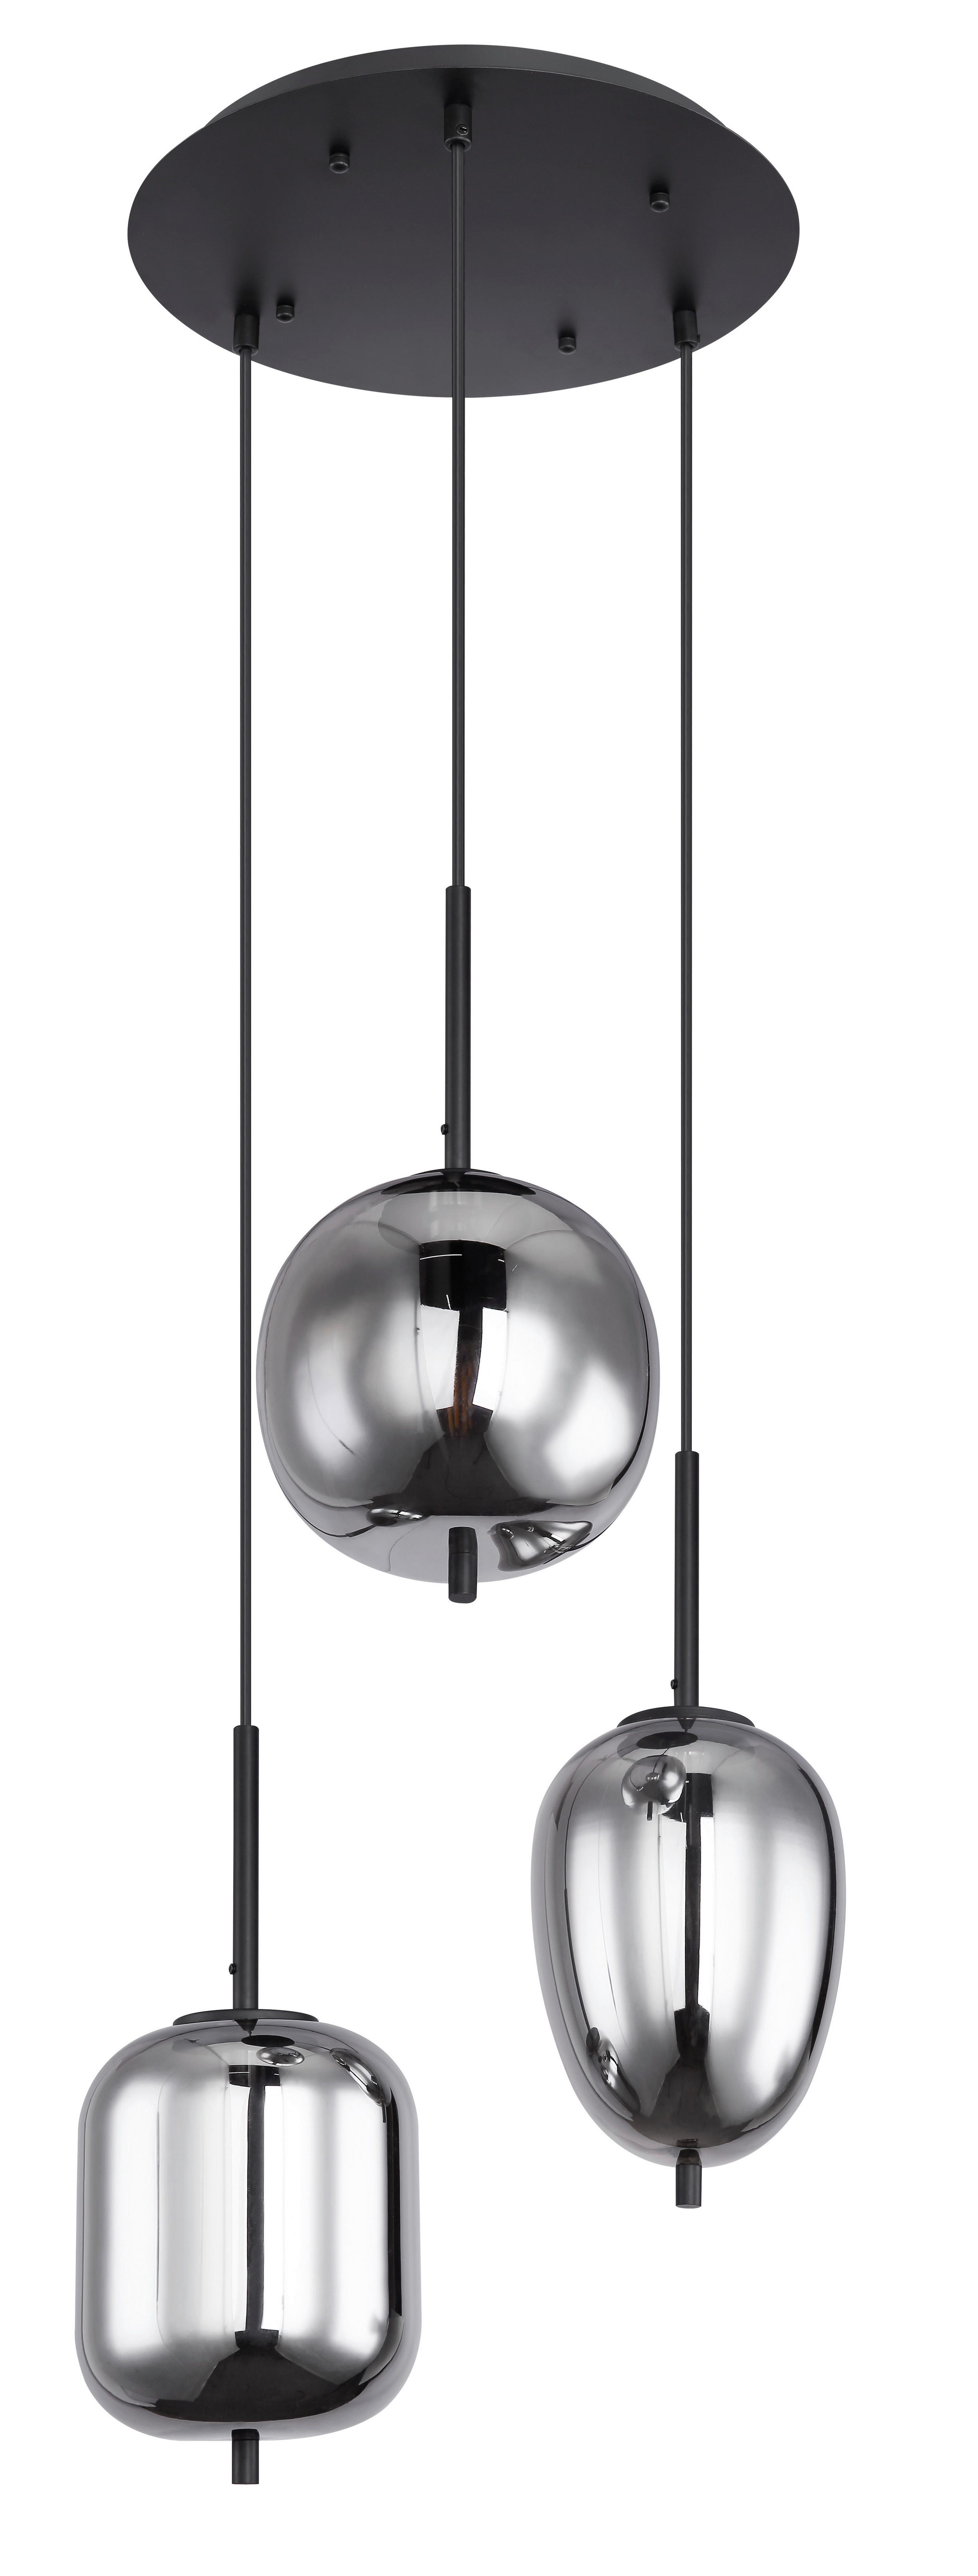 HÄNGELEUCHTE 46/120 cm   - Schwarz/Grau, Design, Glas/Metall (46/120cm) - Globo